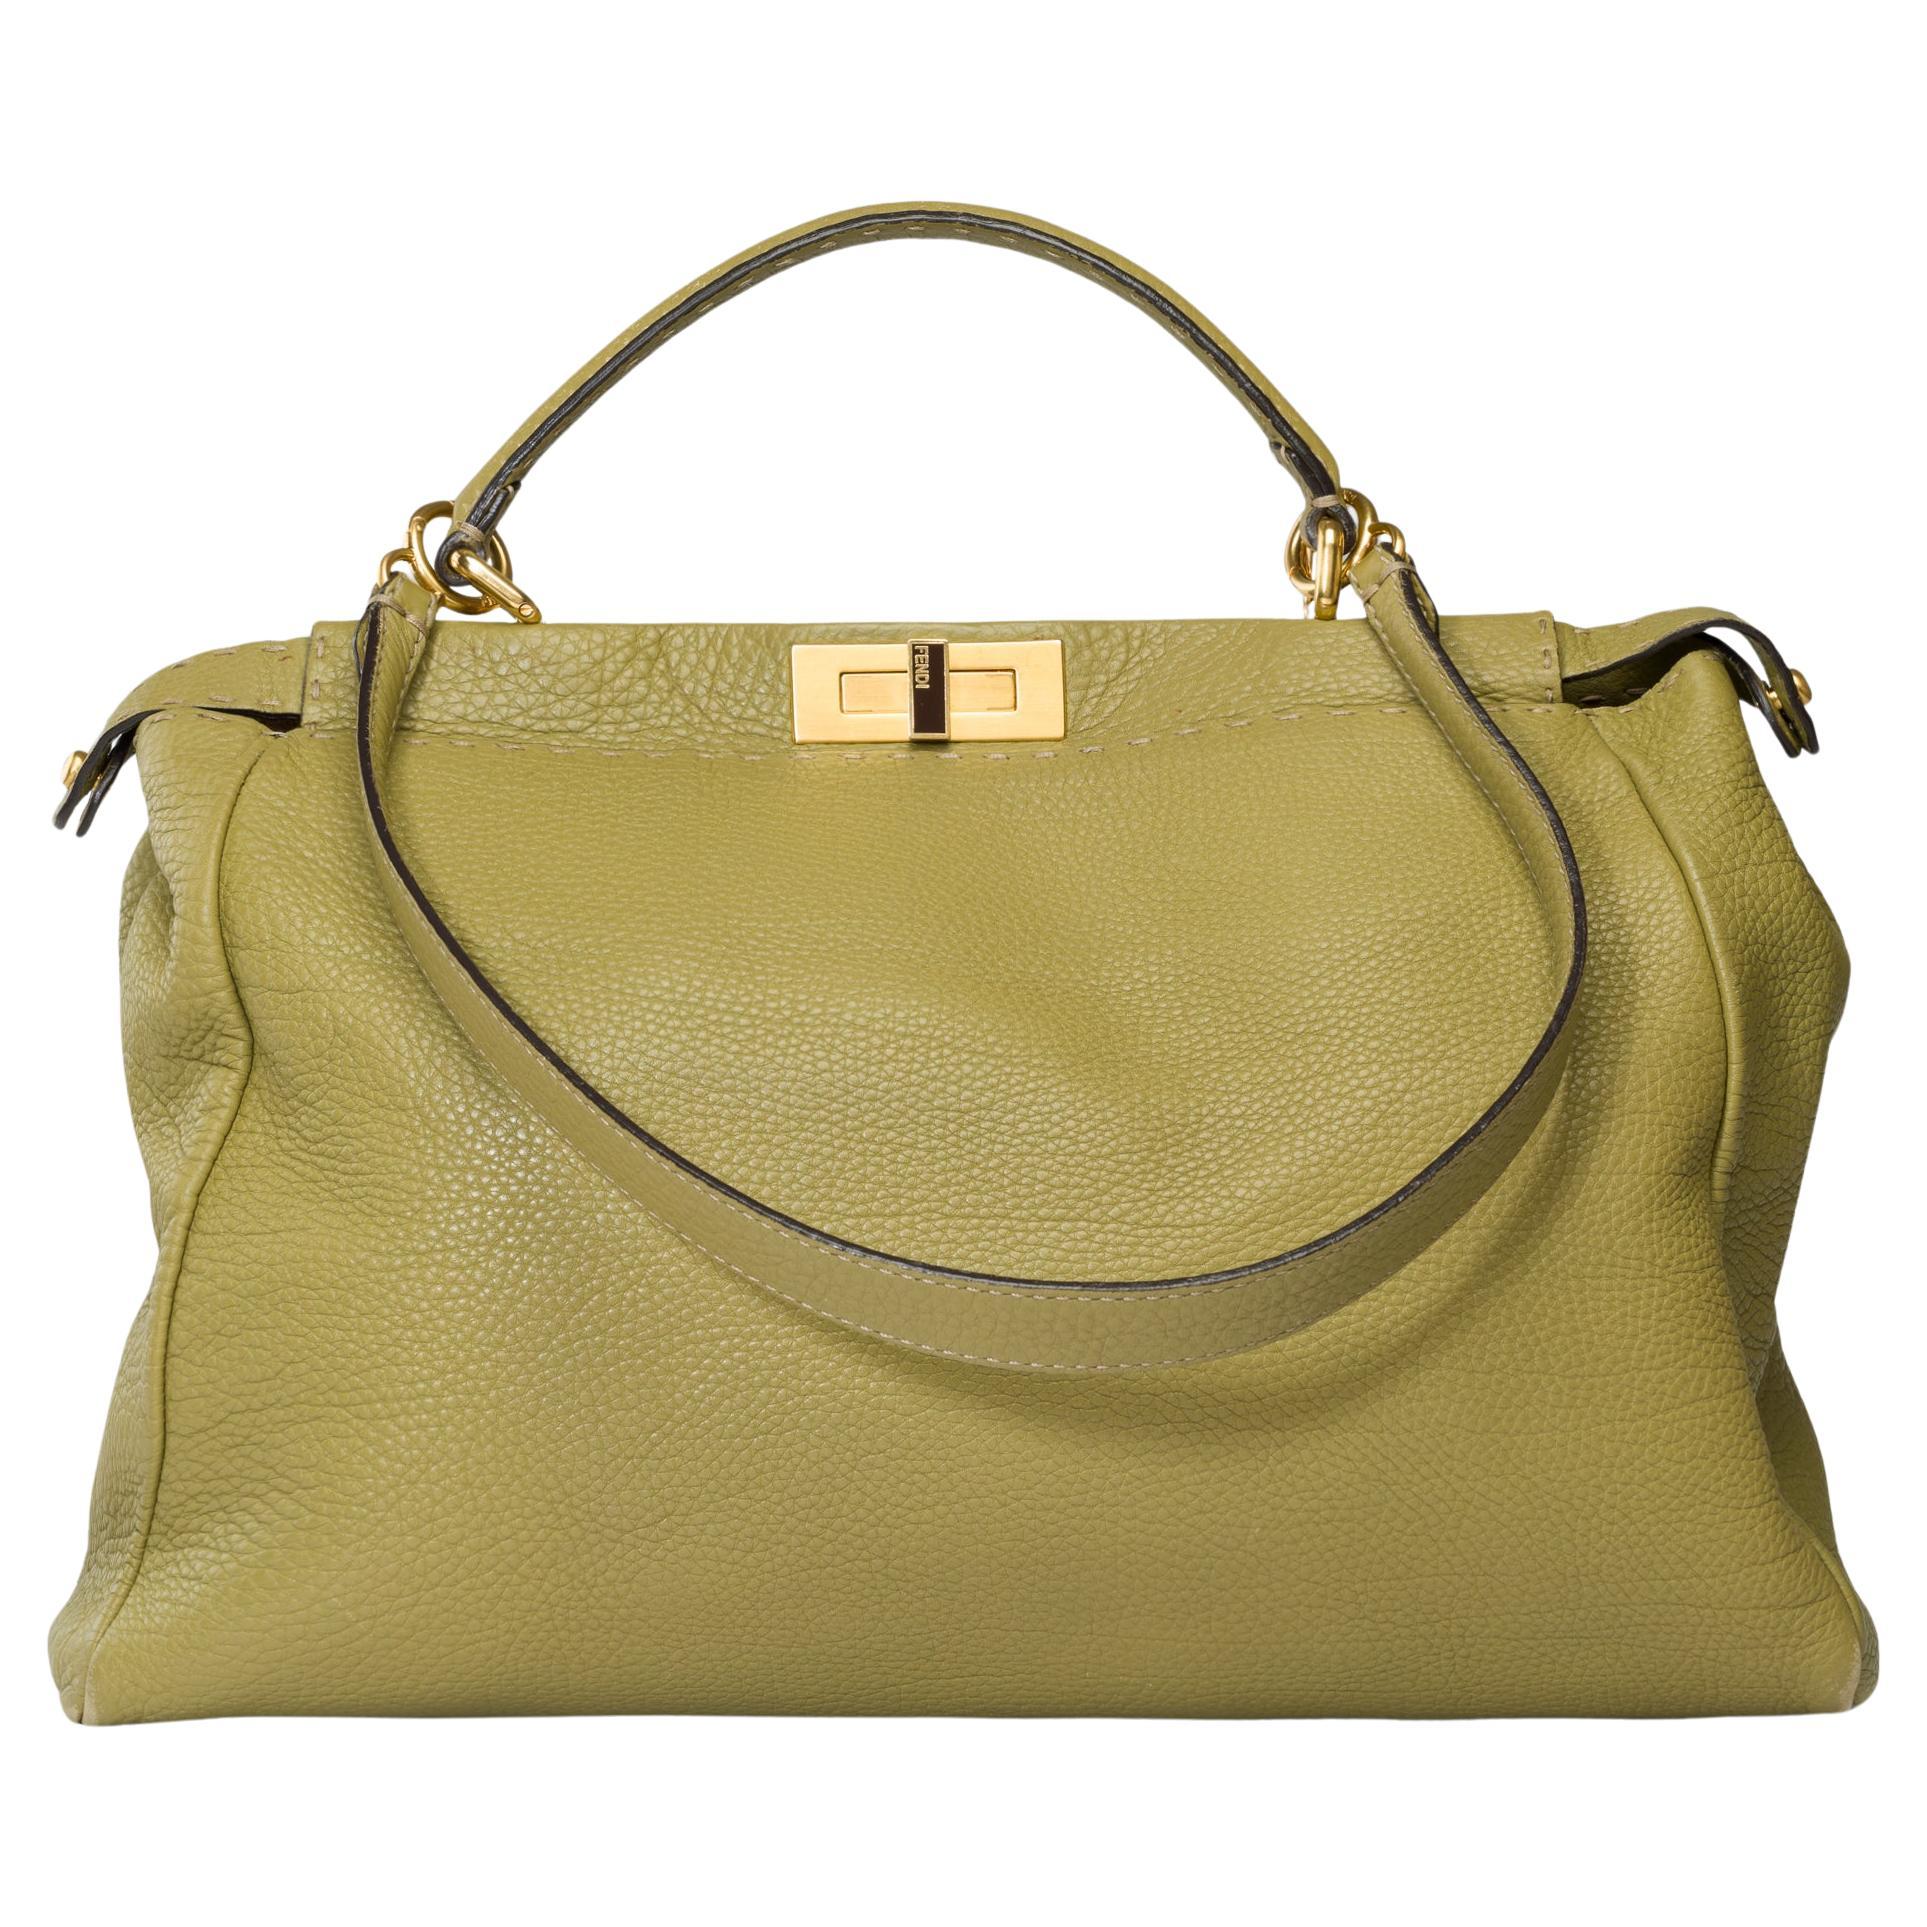 Fendi Grand Modele Peekaboo handbag strap in Olive Green calf leather, GHW For Sale